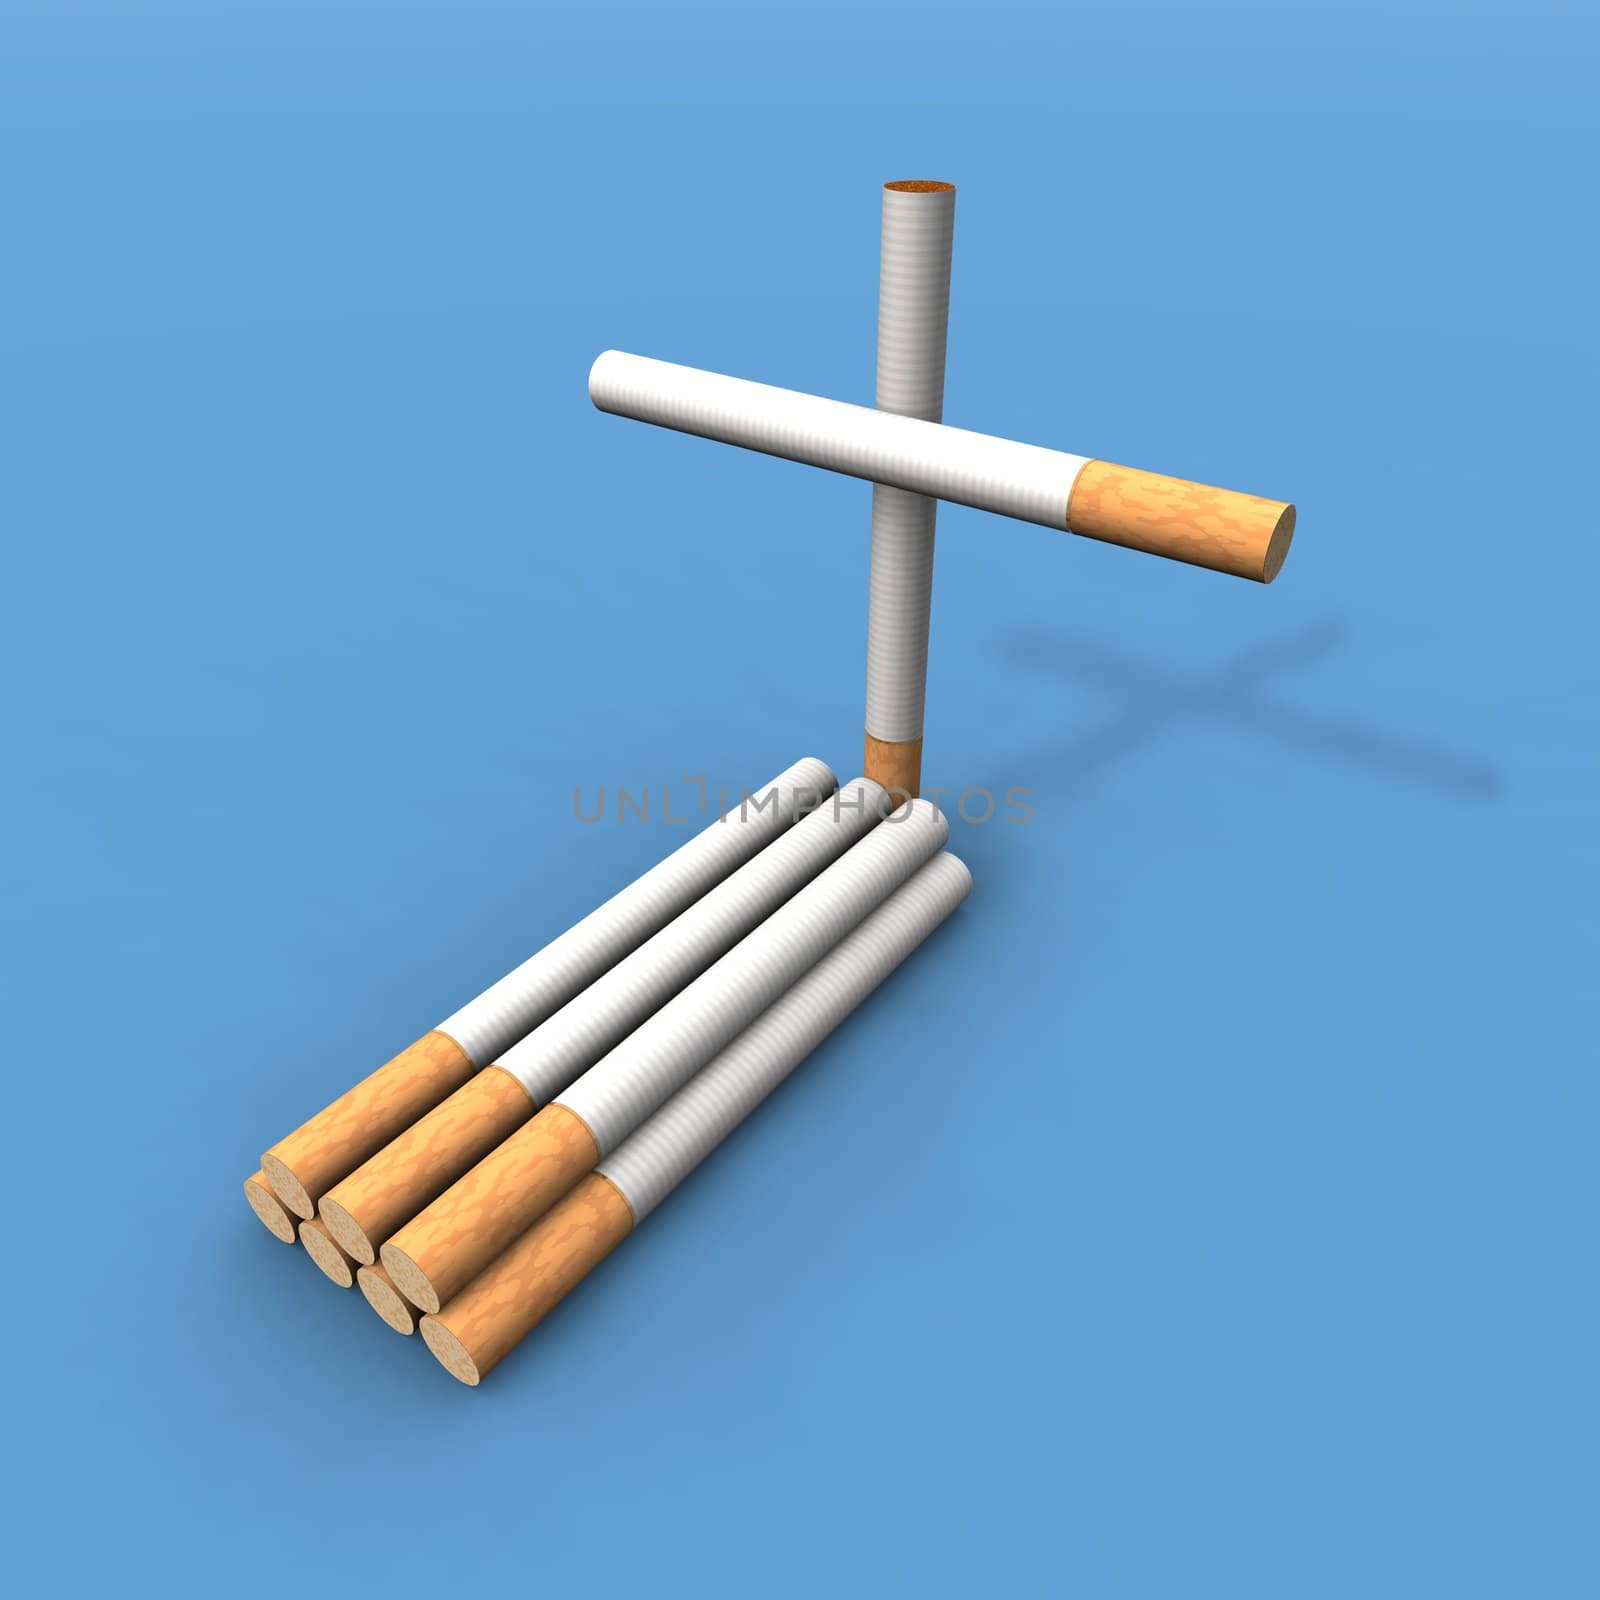 cigarette grave by jbouzou